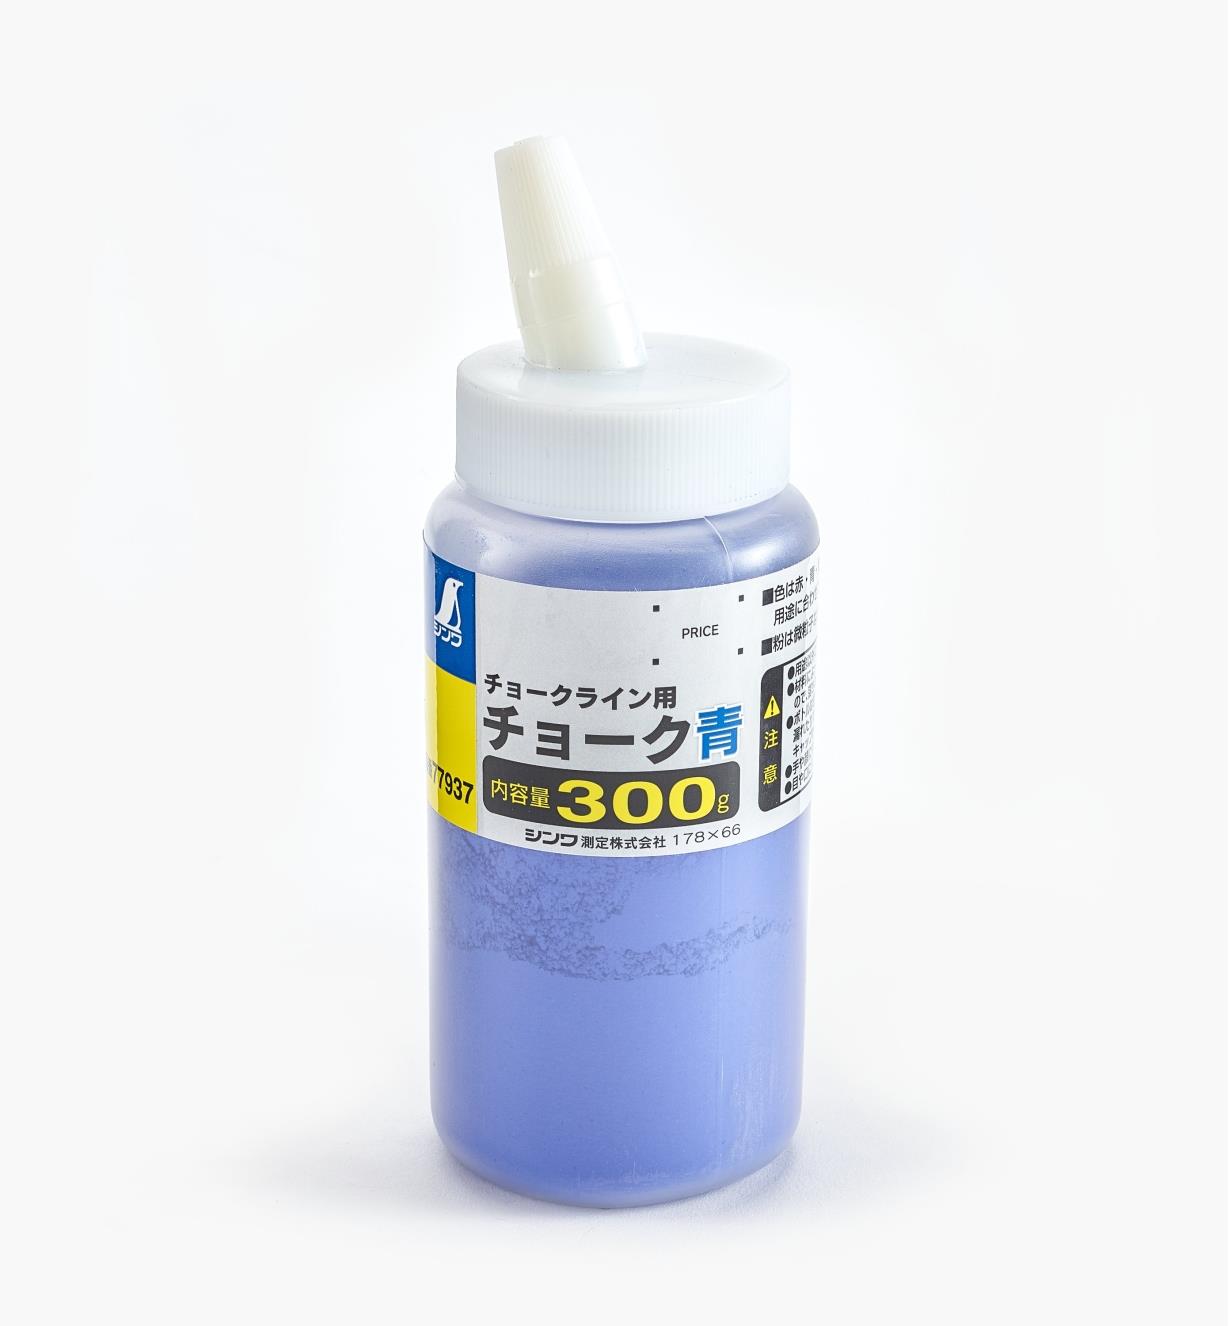 83U0252 - 300g Blue Chalk Powder